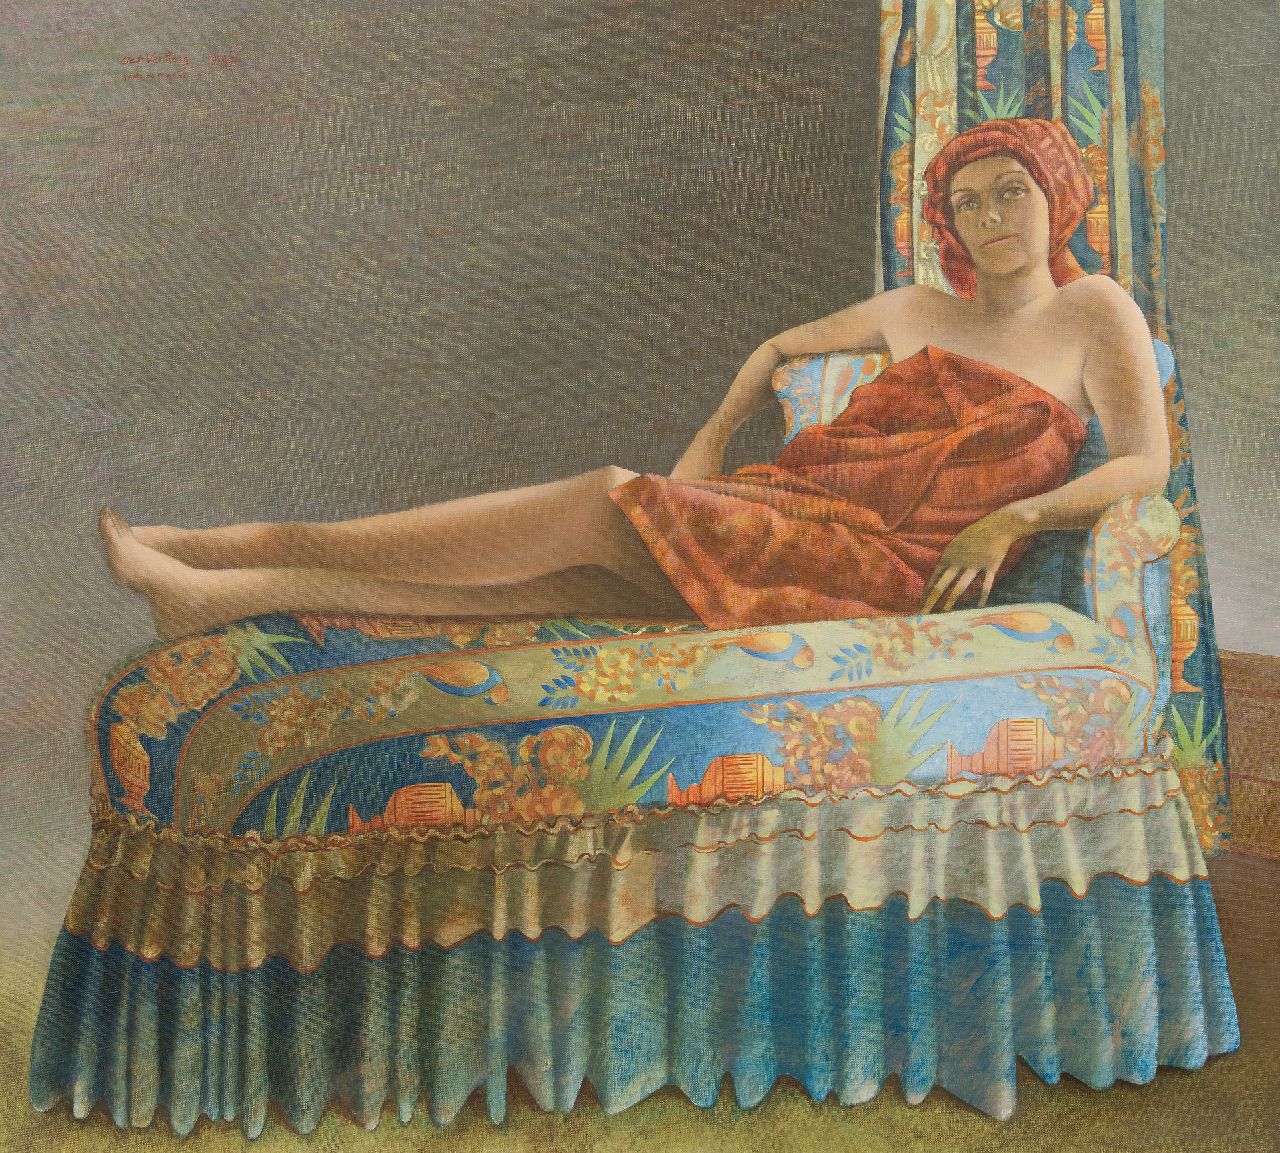 Aat Verhoog | Emilie Verhoog resting after bath, oil on canvas, 90.2 x 100.2 cm, signed u.l. and dated 1990/91